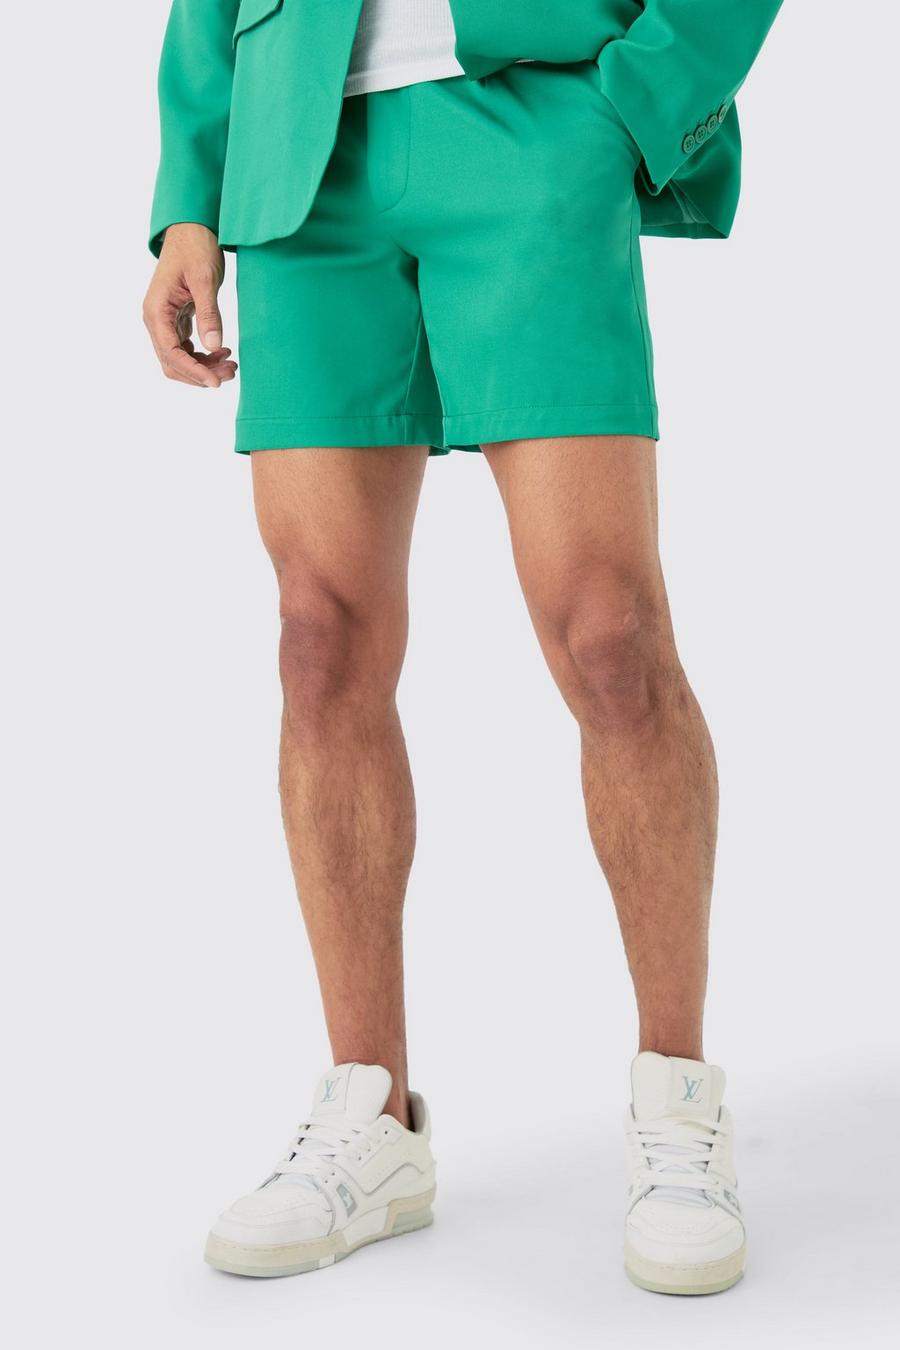 Pantalón corto entallado - pieza intercambiable, Green image number 1